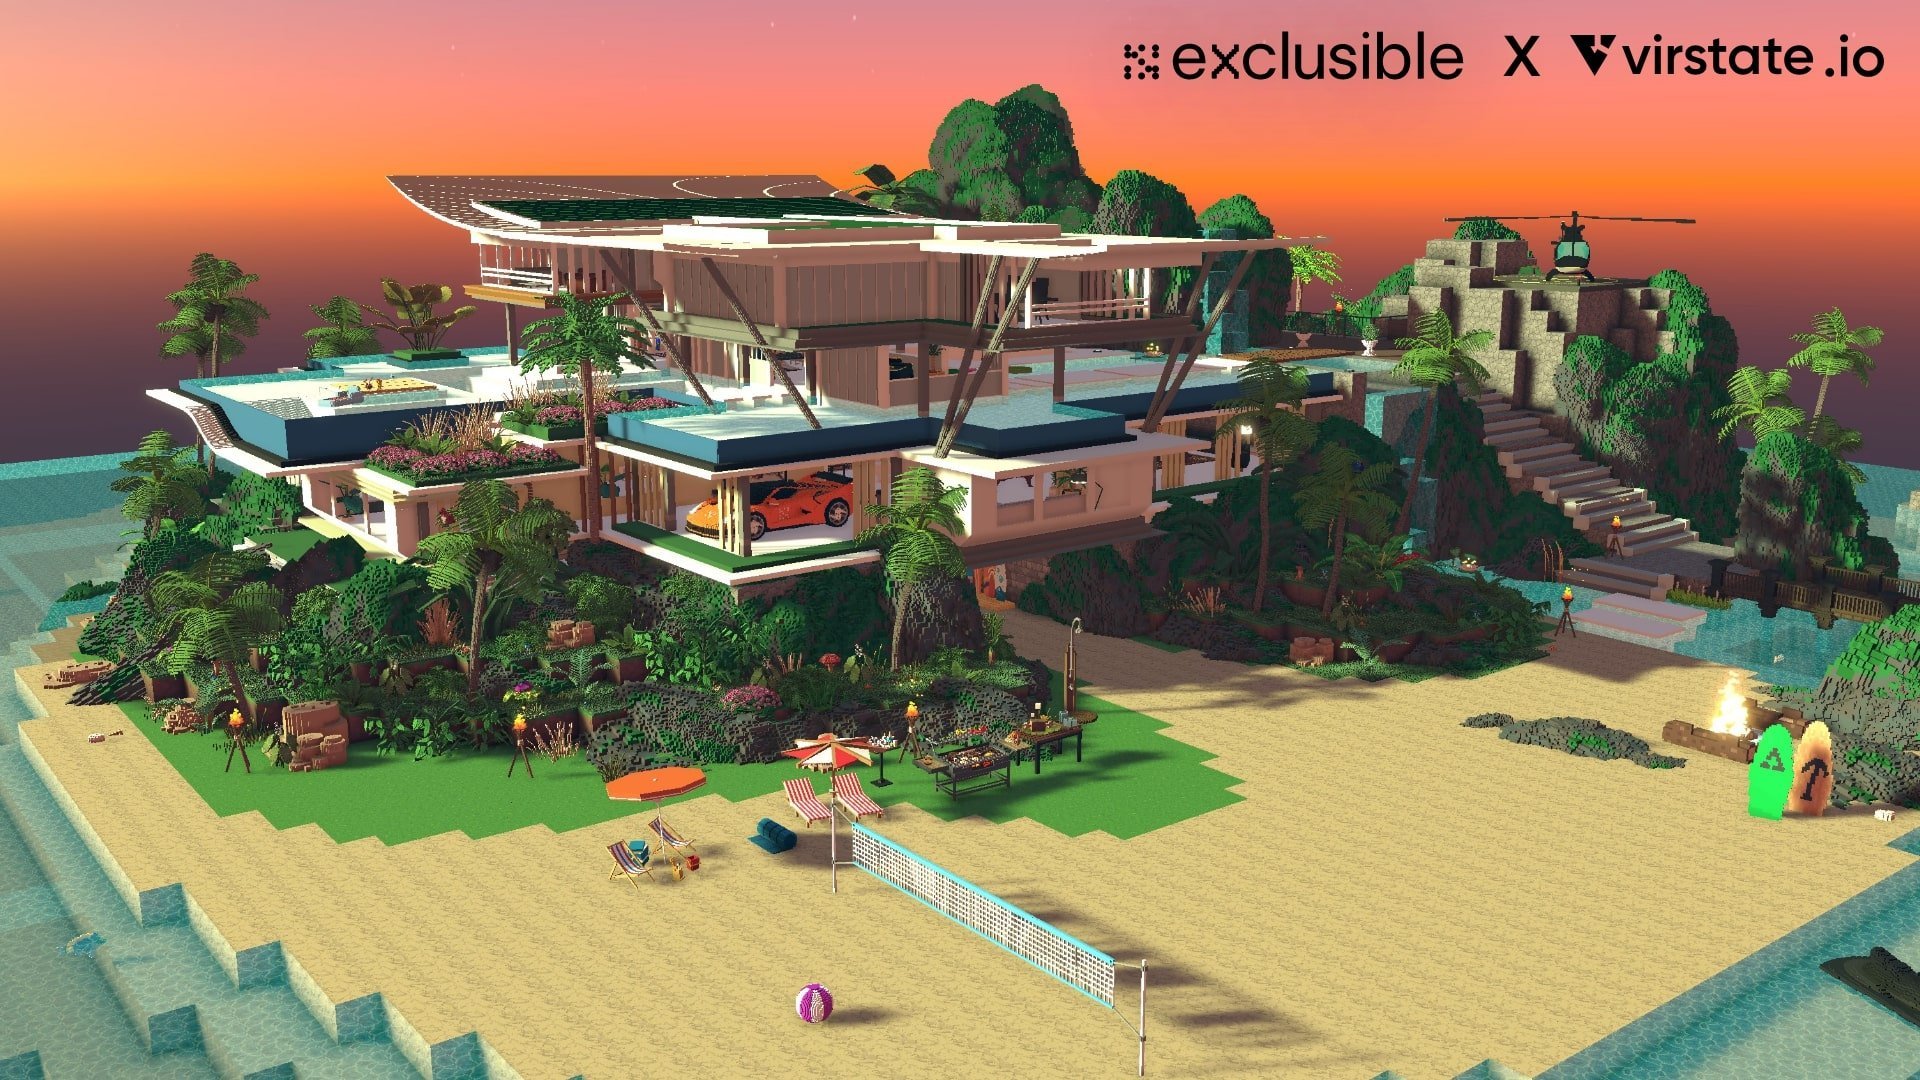 Web3 Exclusible's luxury metaverse villa 